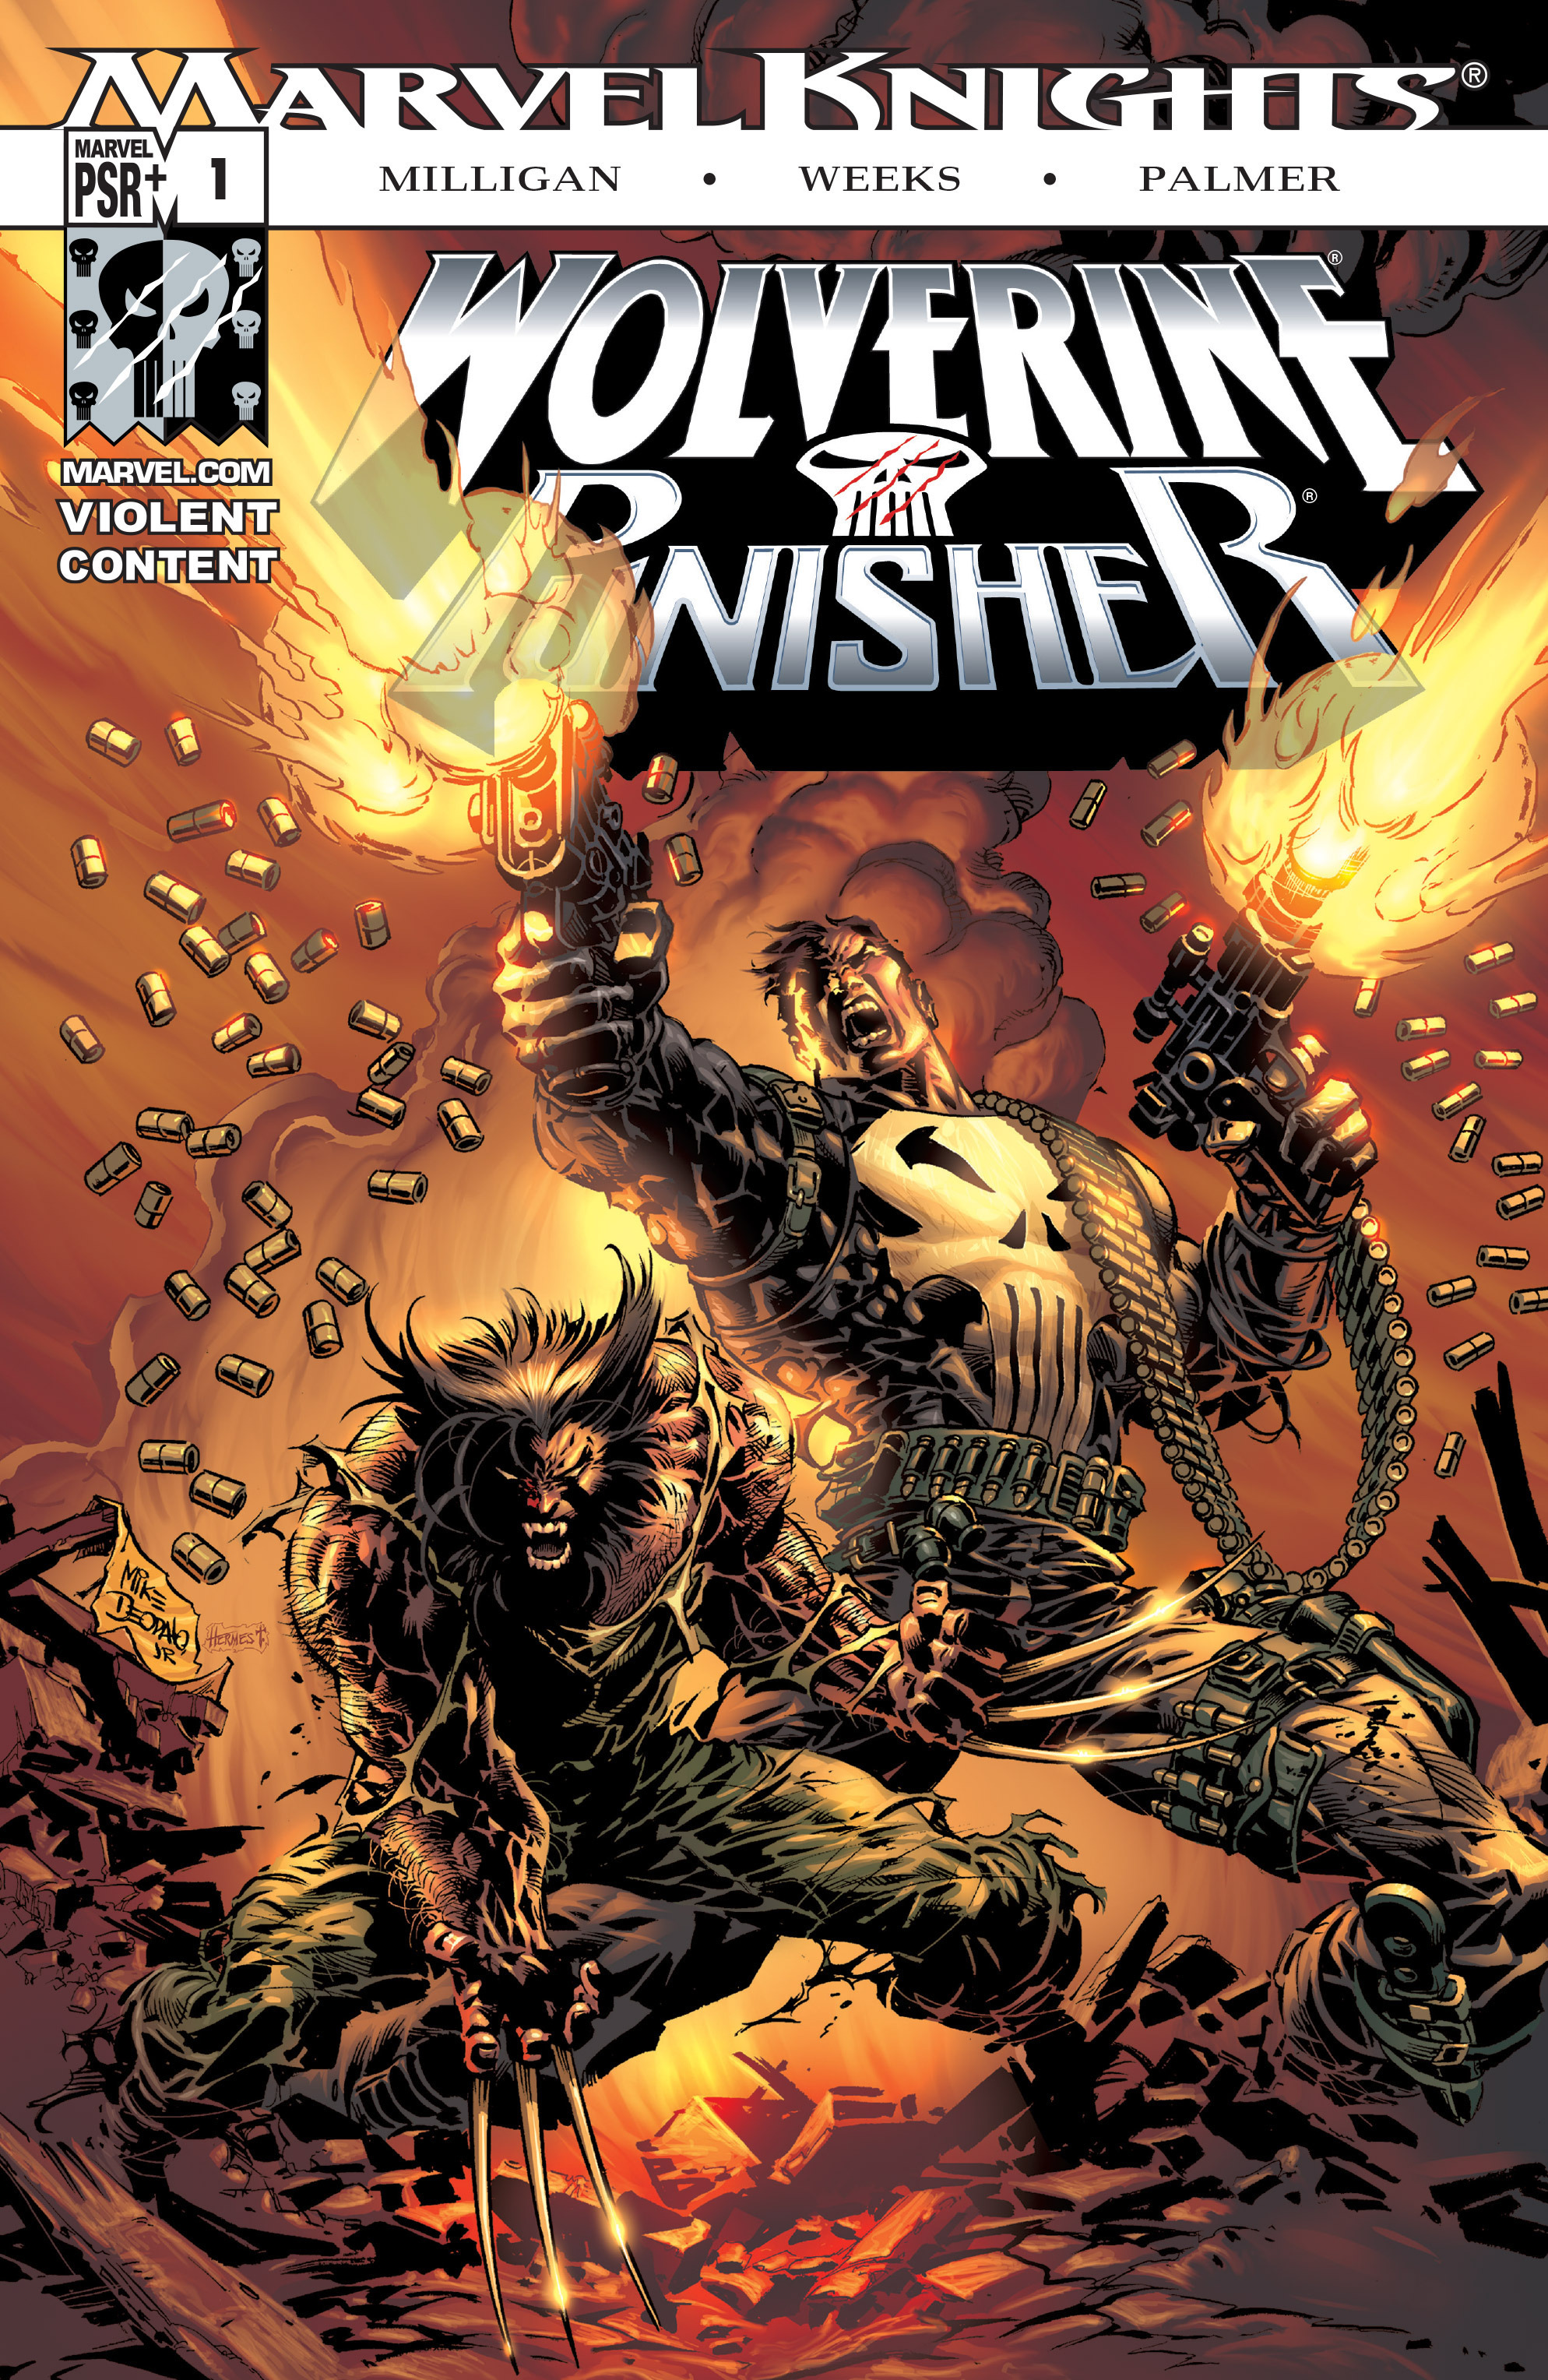 Read online Wolverine/Punisher comic -  Issue #1 - 1